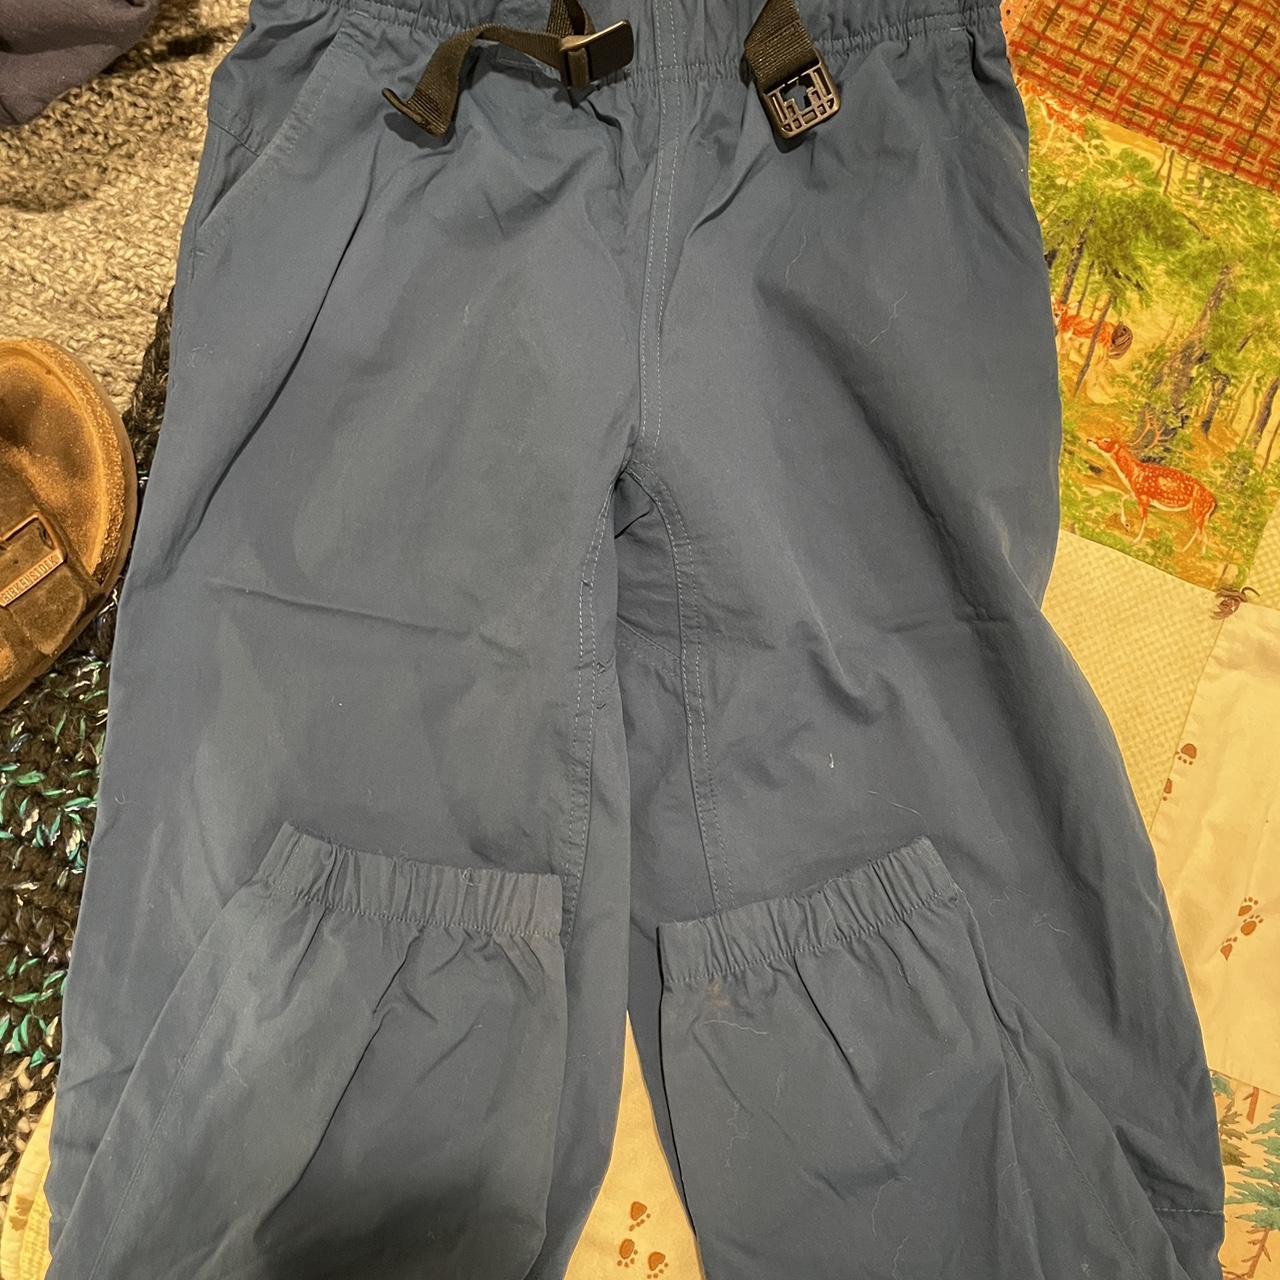 Mountain Hardwear Hiking Pants - Depop